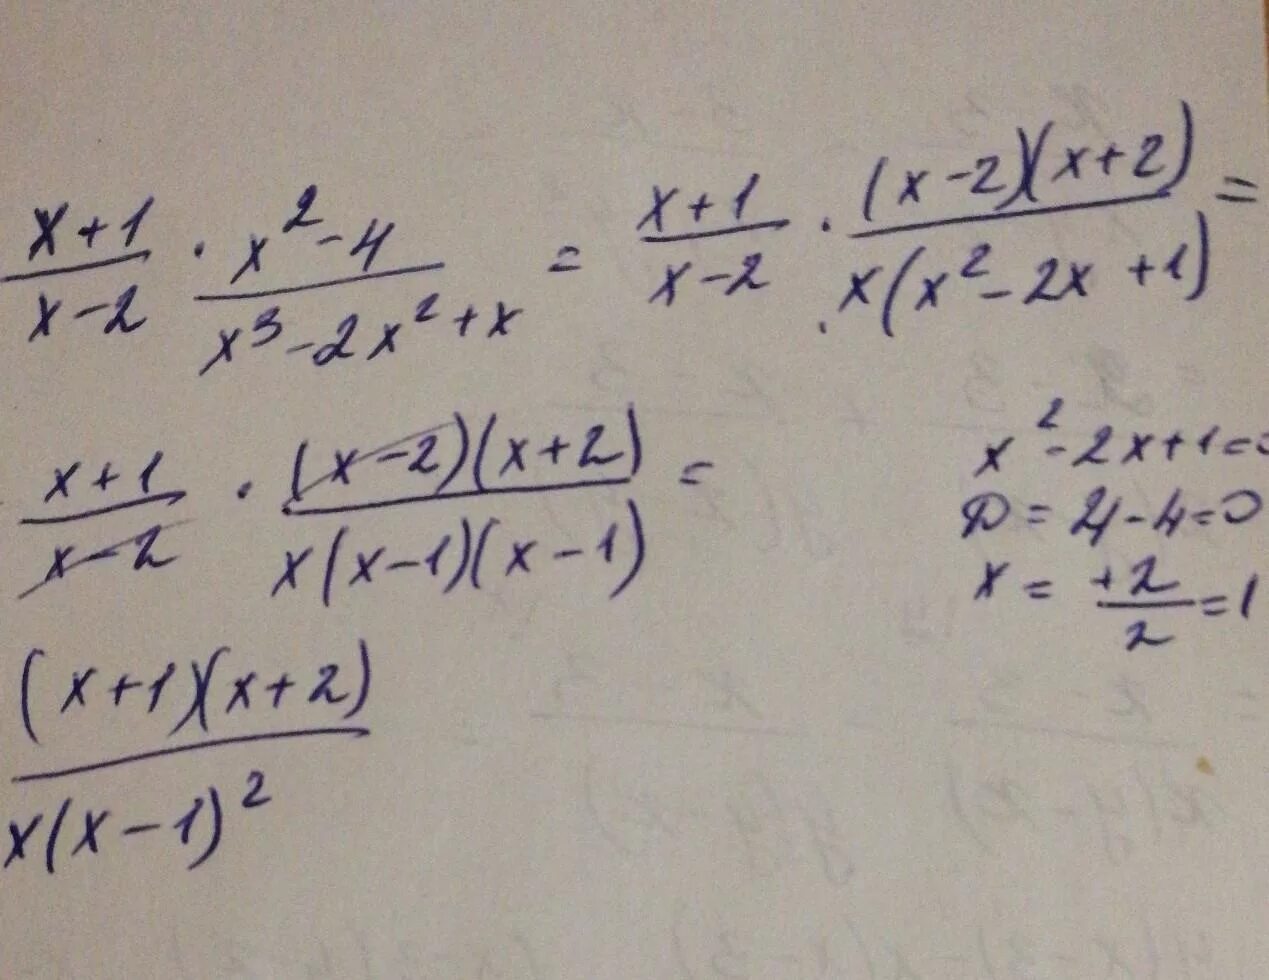 Упростите выражение (x-1) (x 2+1) +(3-x) (9+3x+x 2). Упростите выражение x2/x2-1 x/x+1. X*(X^2+X)+(-X^2-X-1) упростите. Упростить (x+1)(x+2). Х у 2 0 упростить